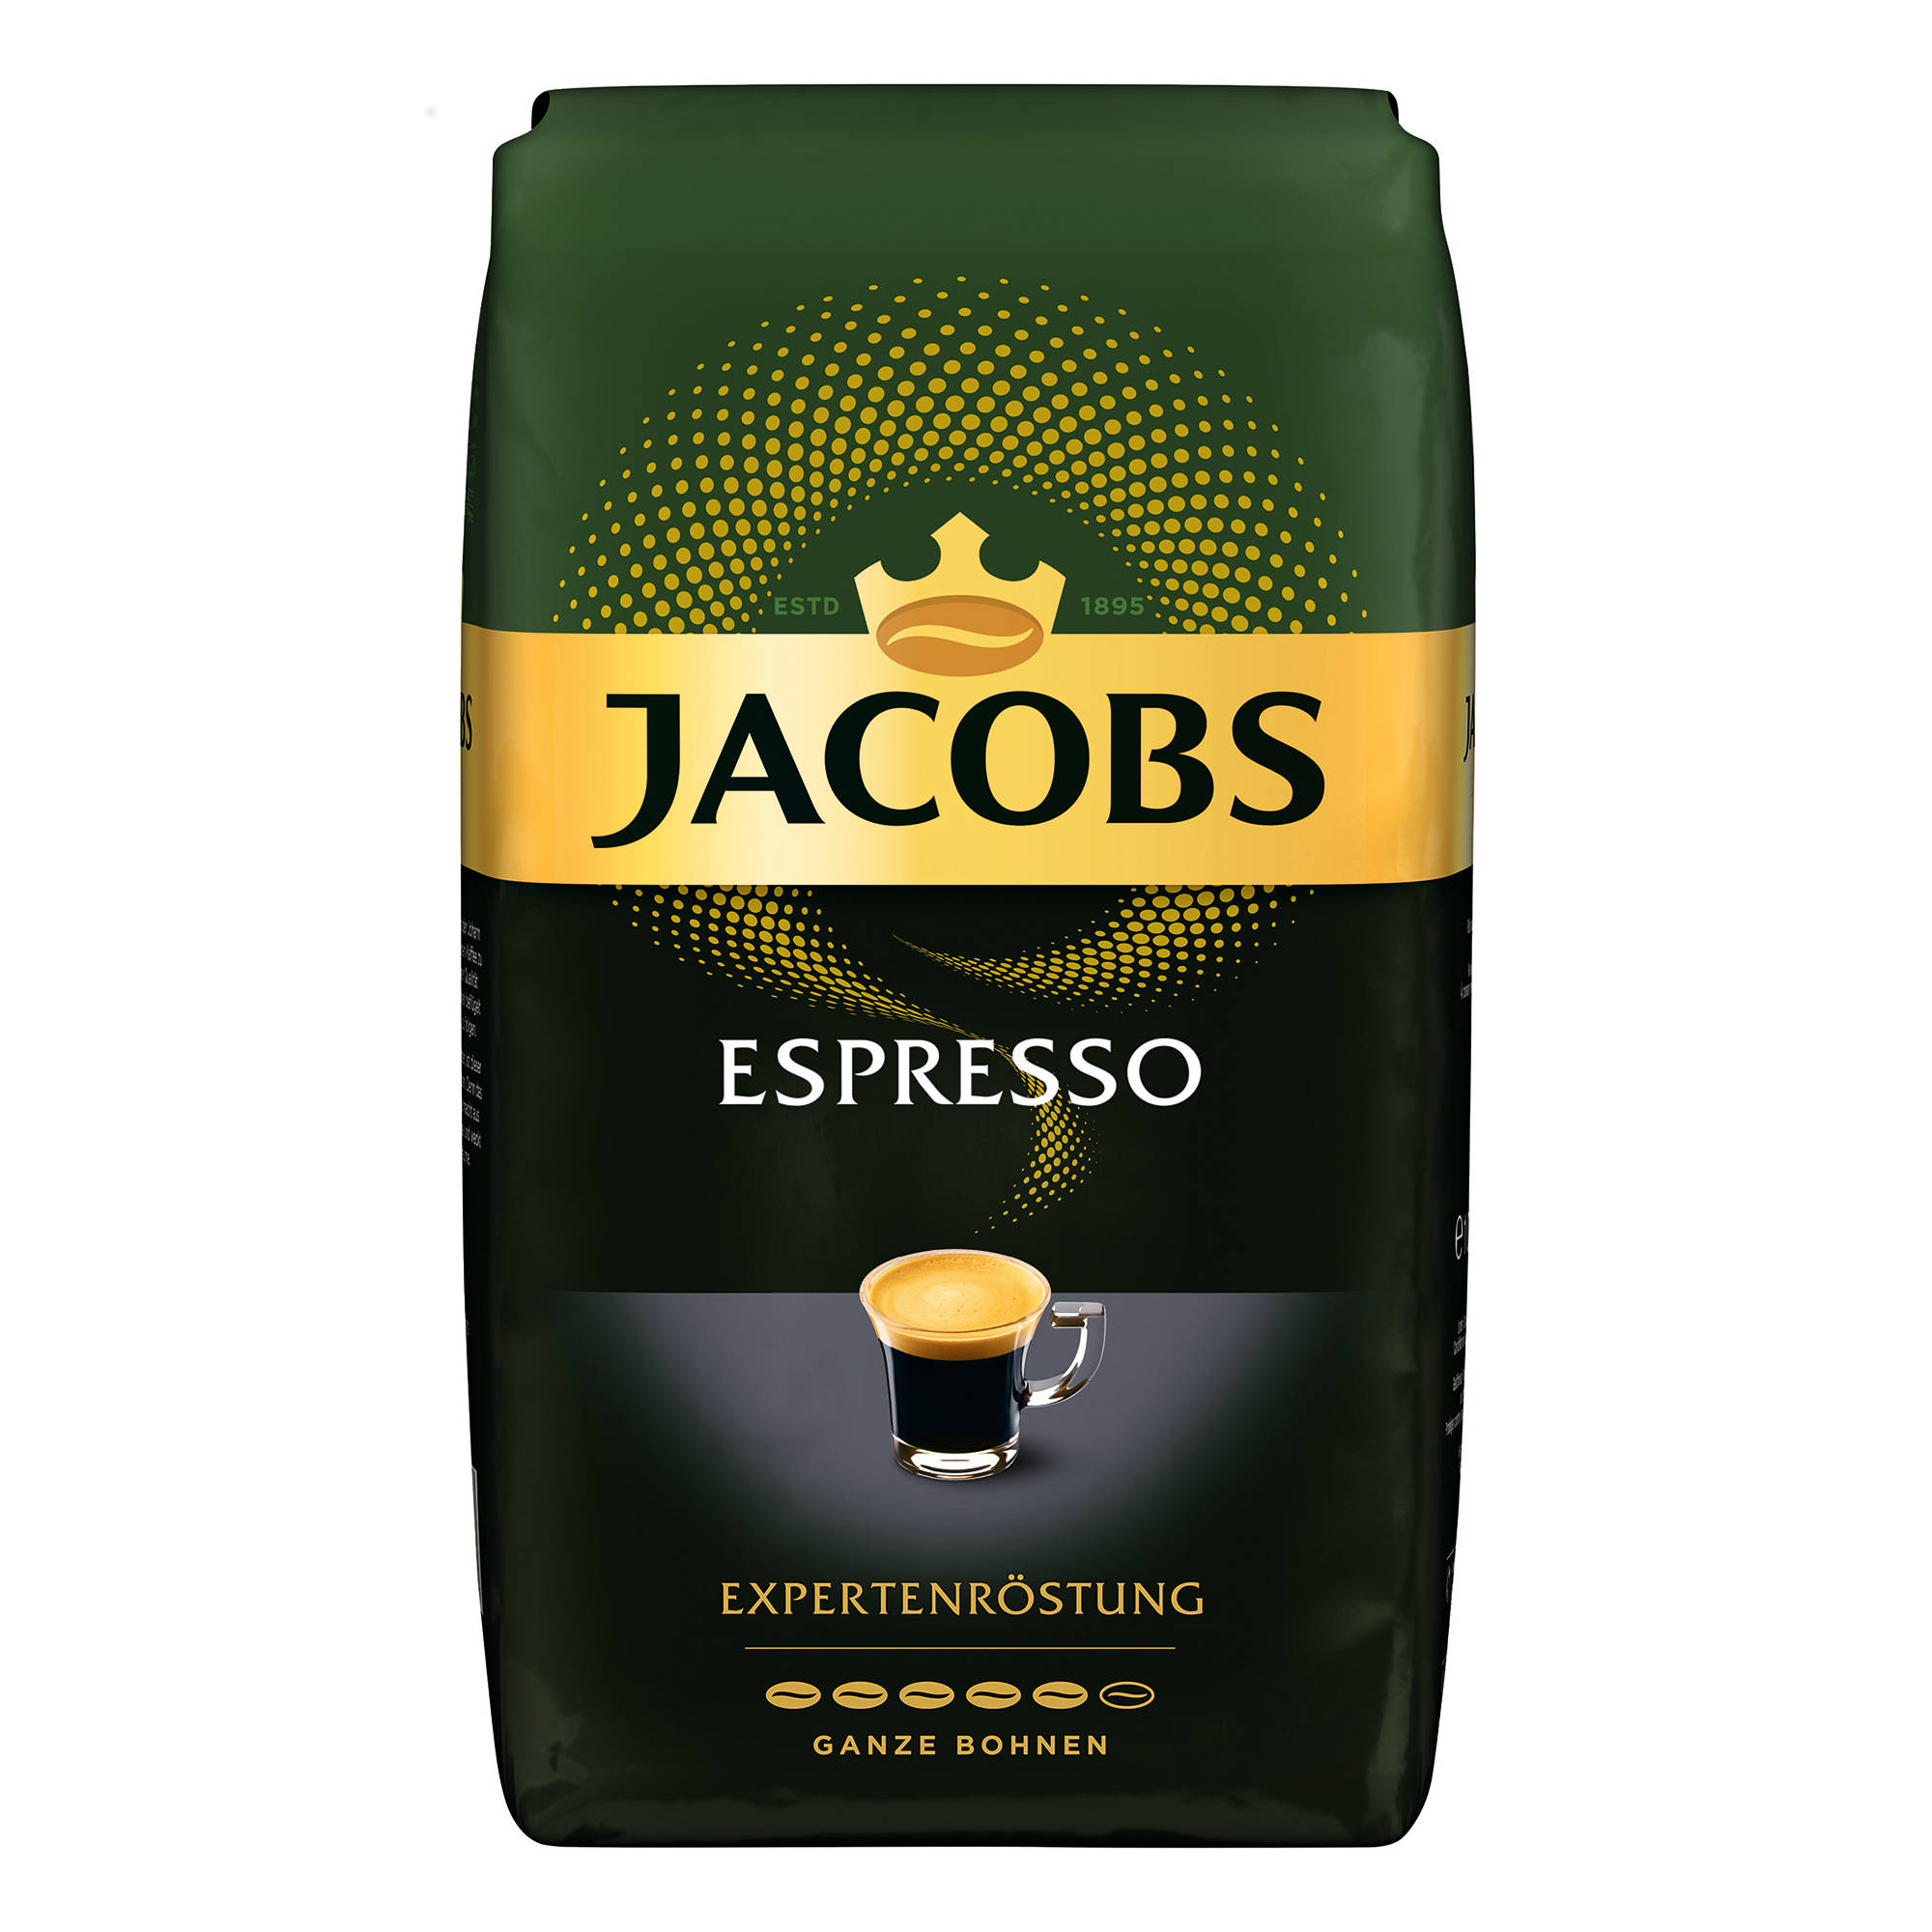 JACOBS Expertenröstung Espresso 4 (Kaffeevollautomat) x geröstete ganze Espressobohnen kg 1